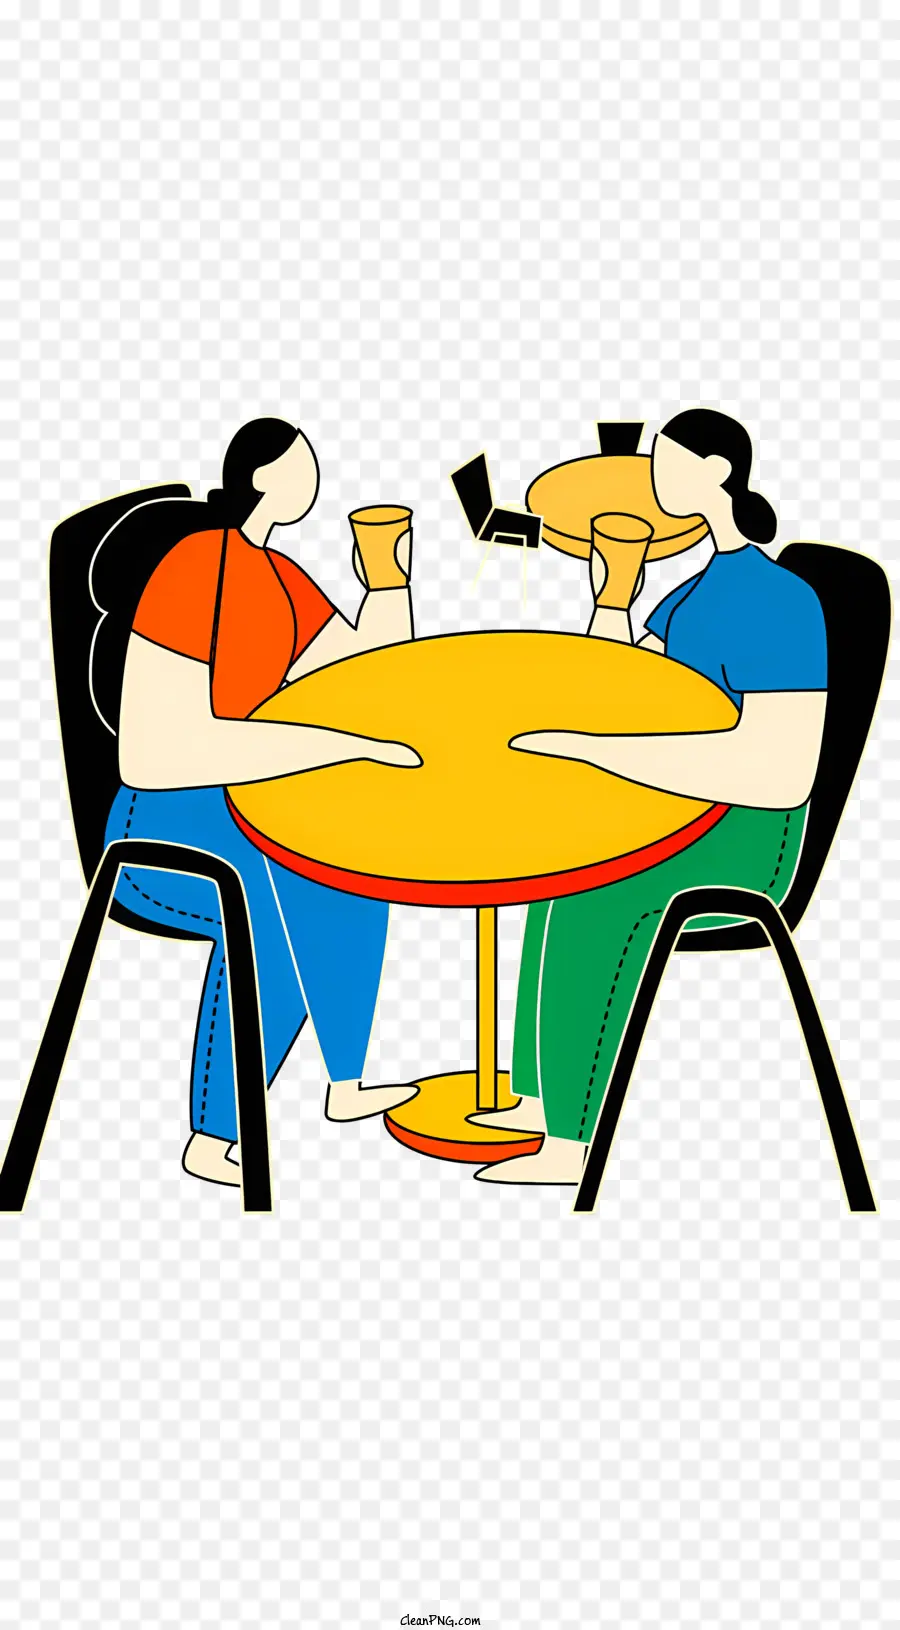 tazzina da caffè - Rappresentazione dei cartoni animati di due persone a un tavolo